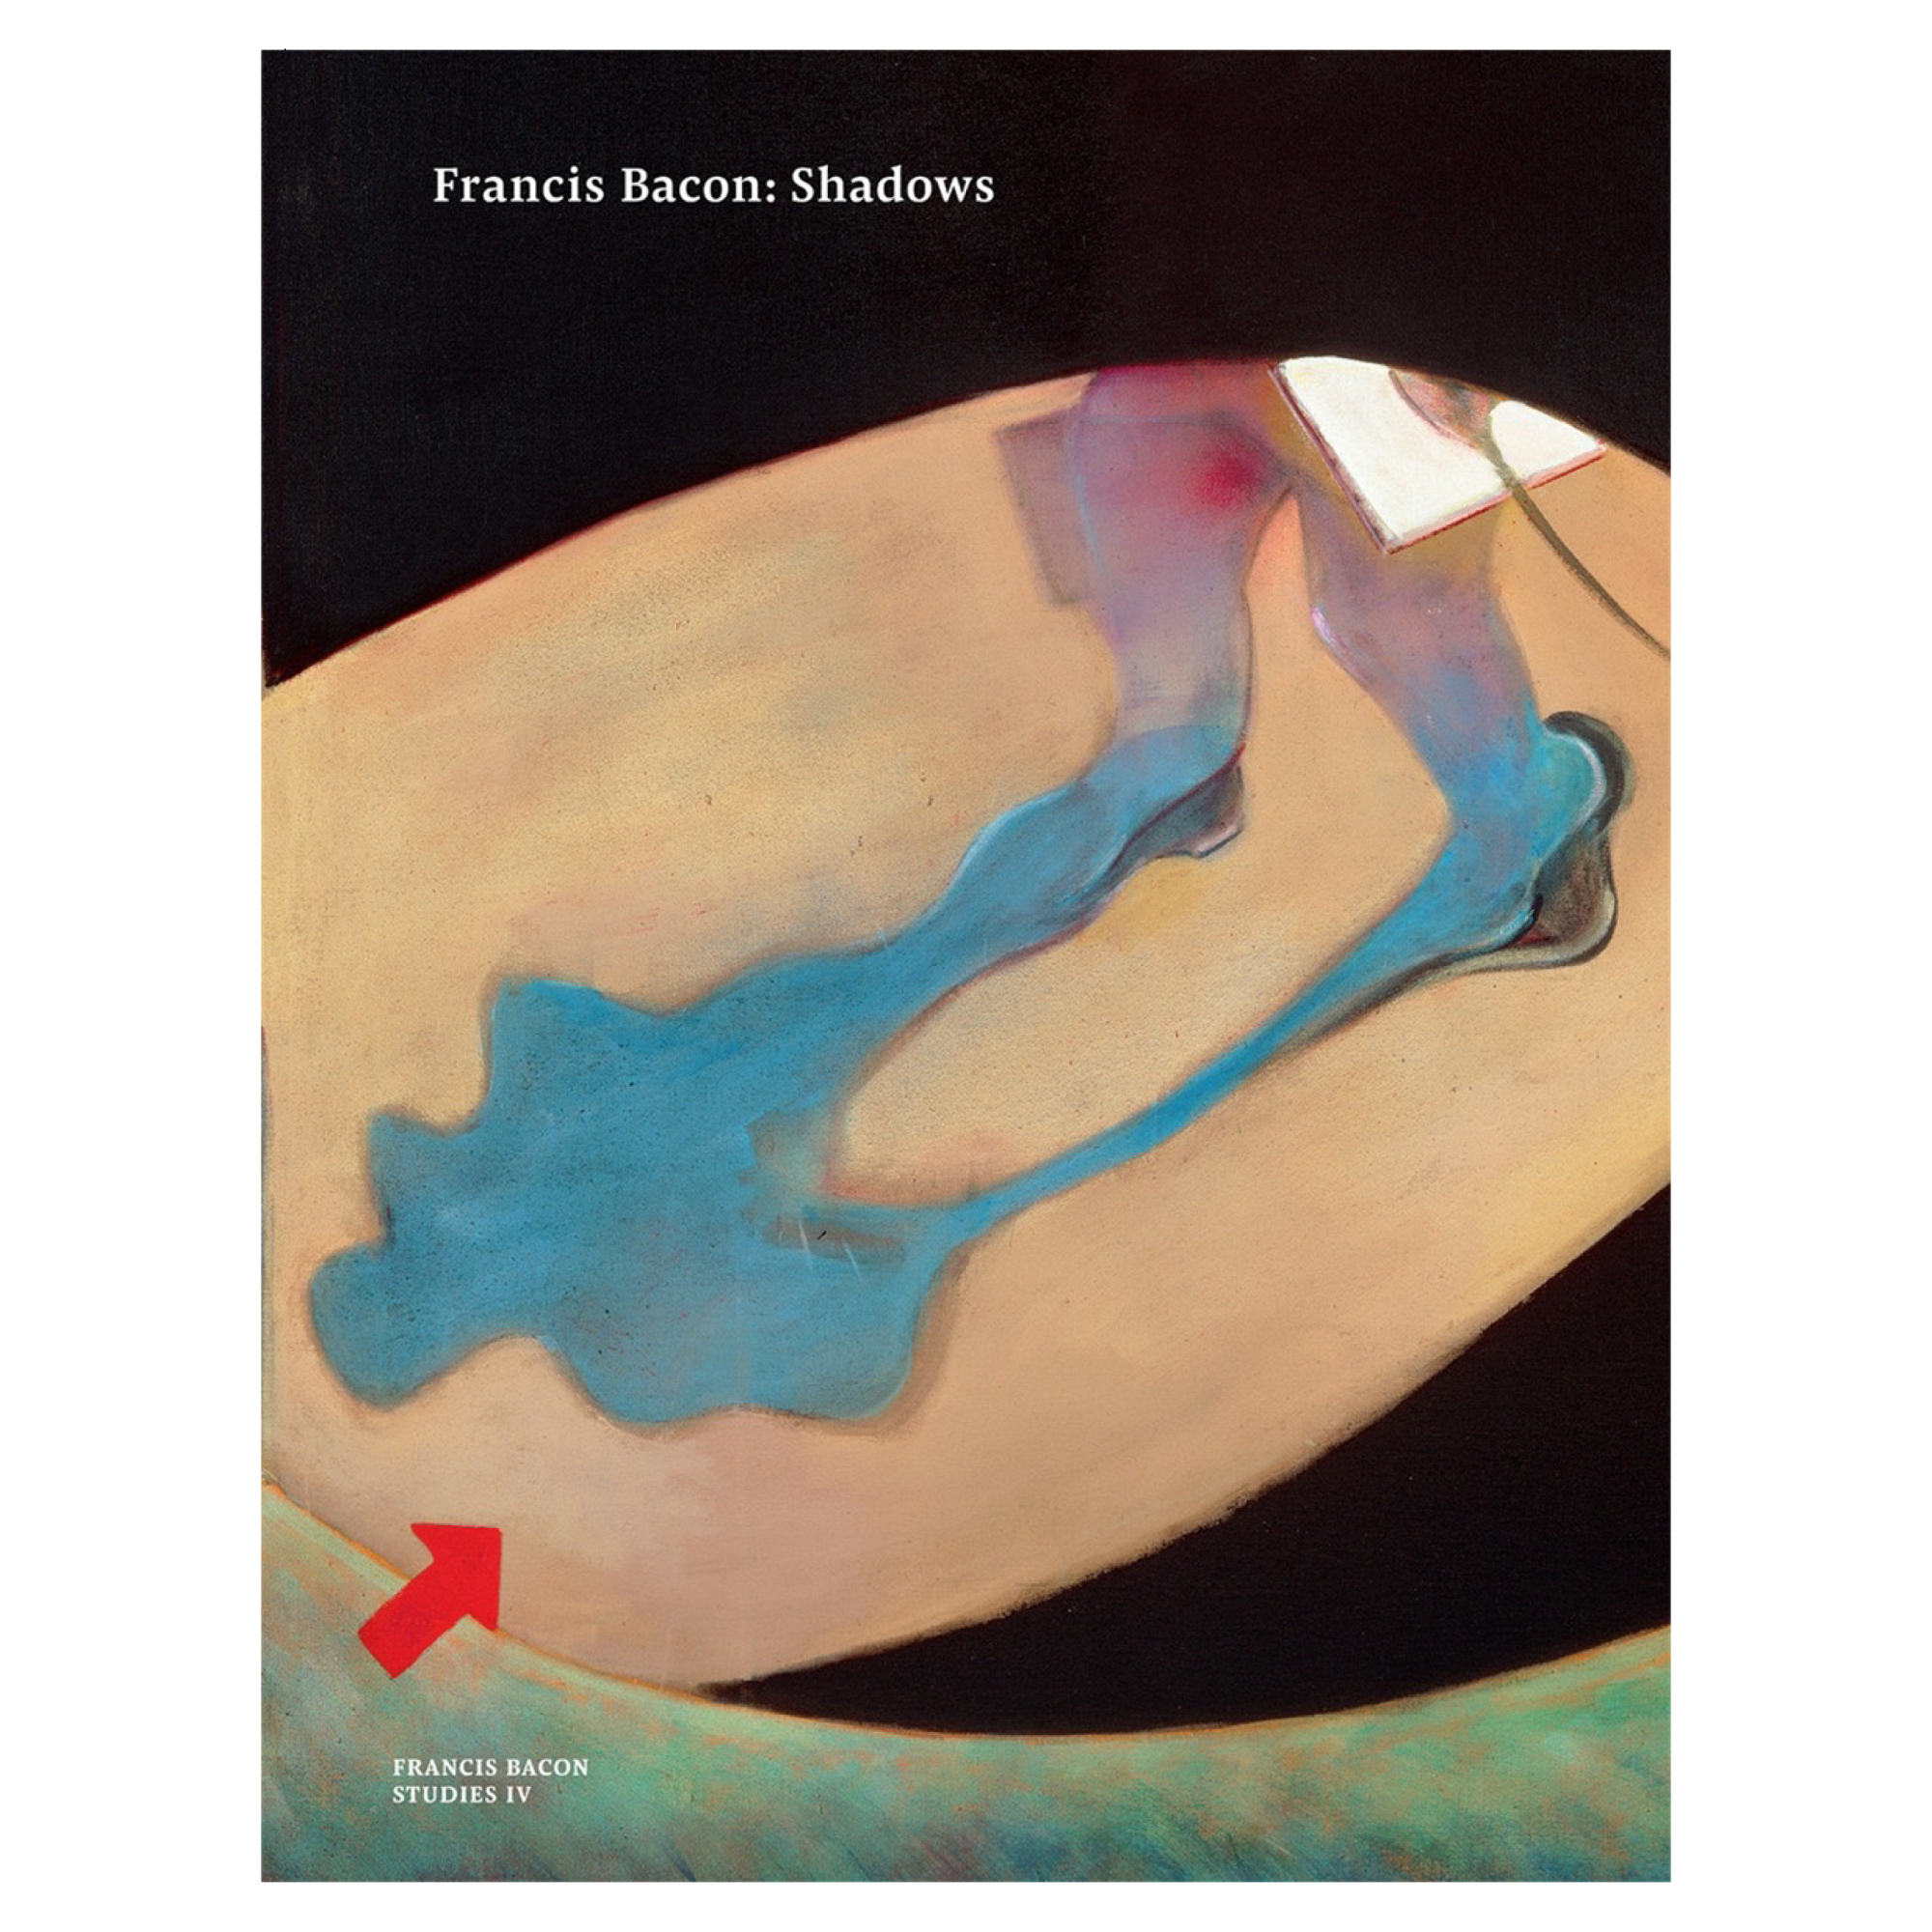 Francis Bacon: Shadows